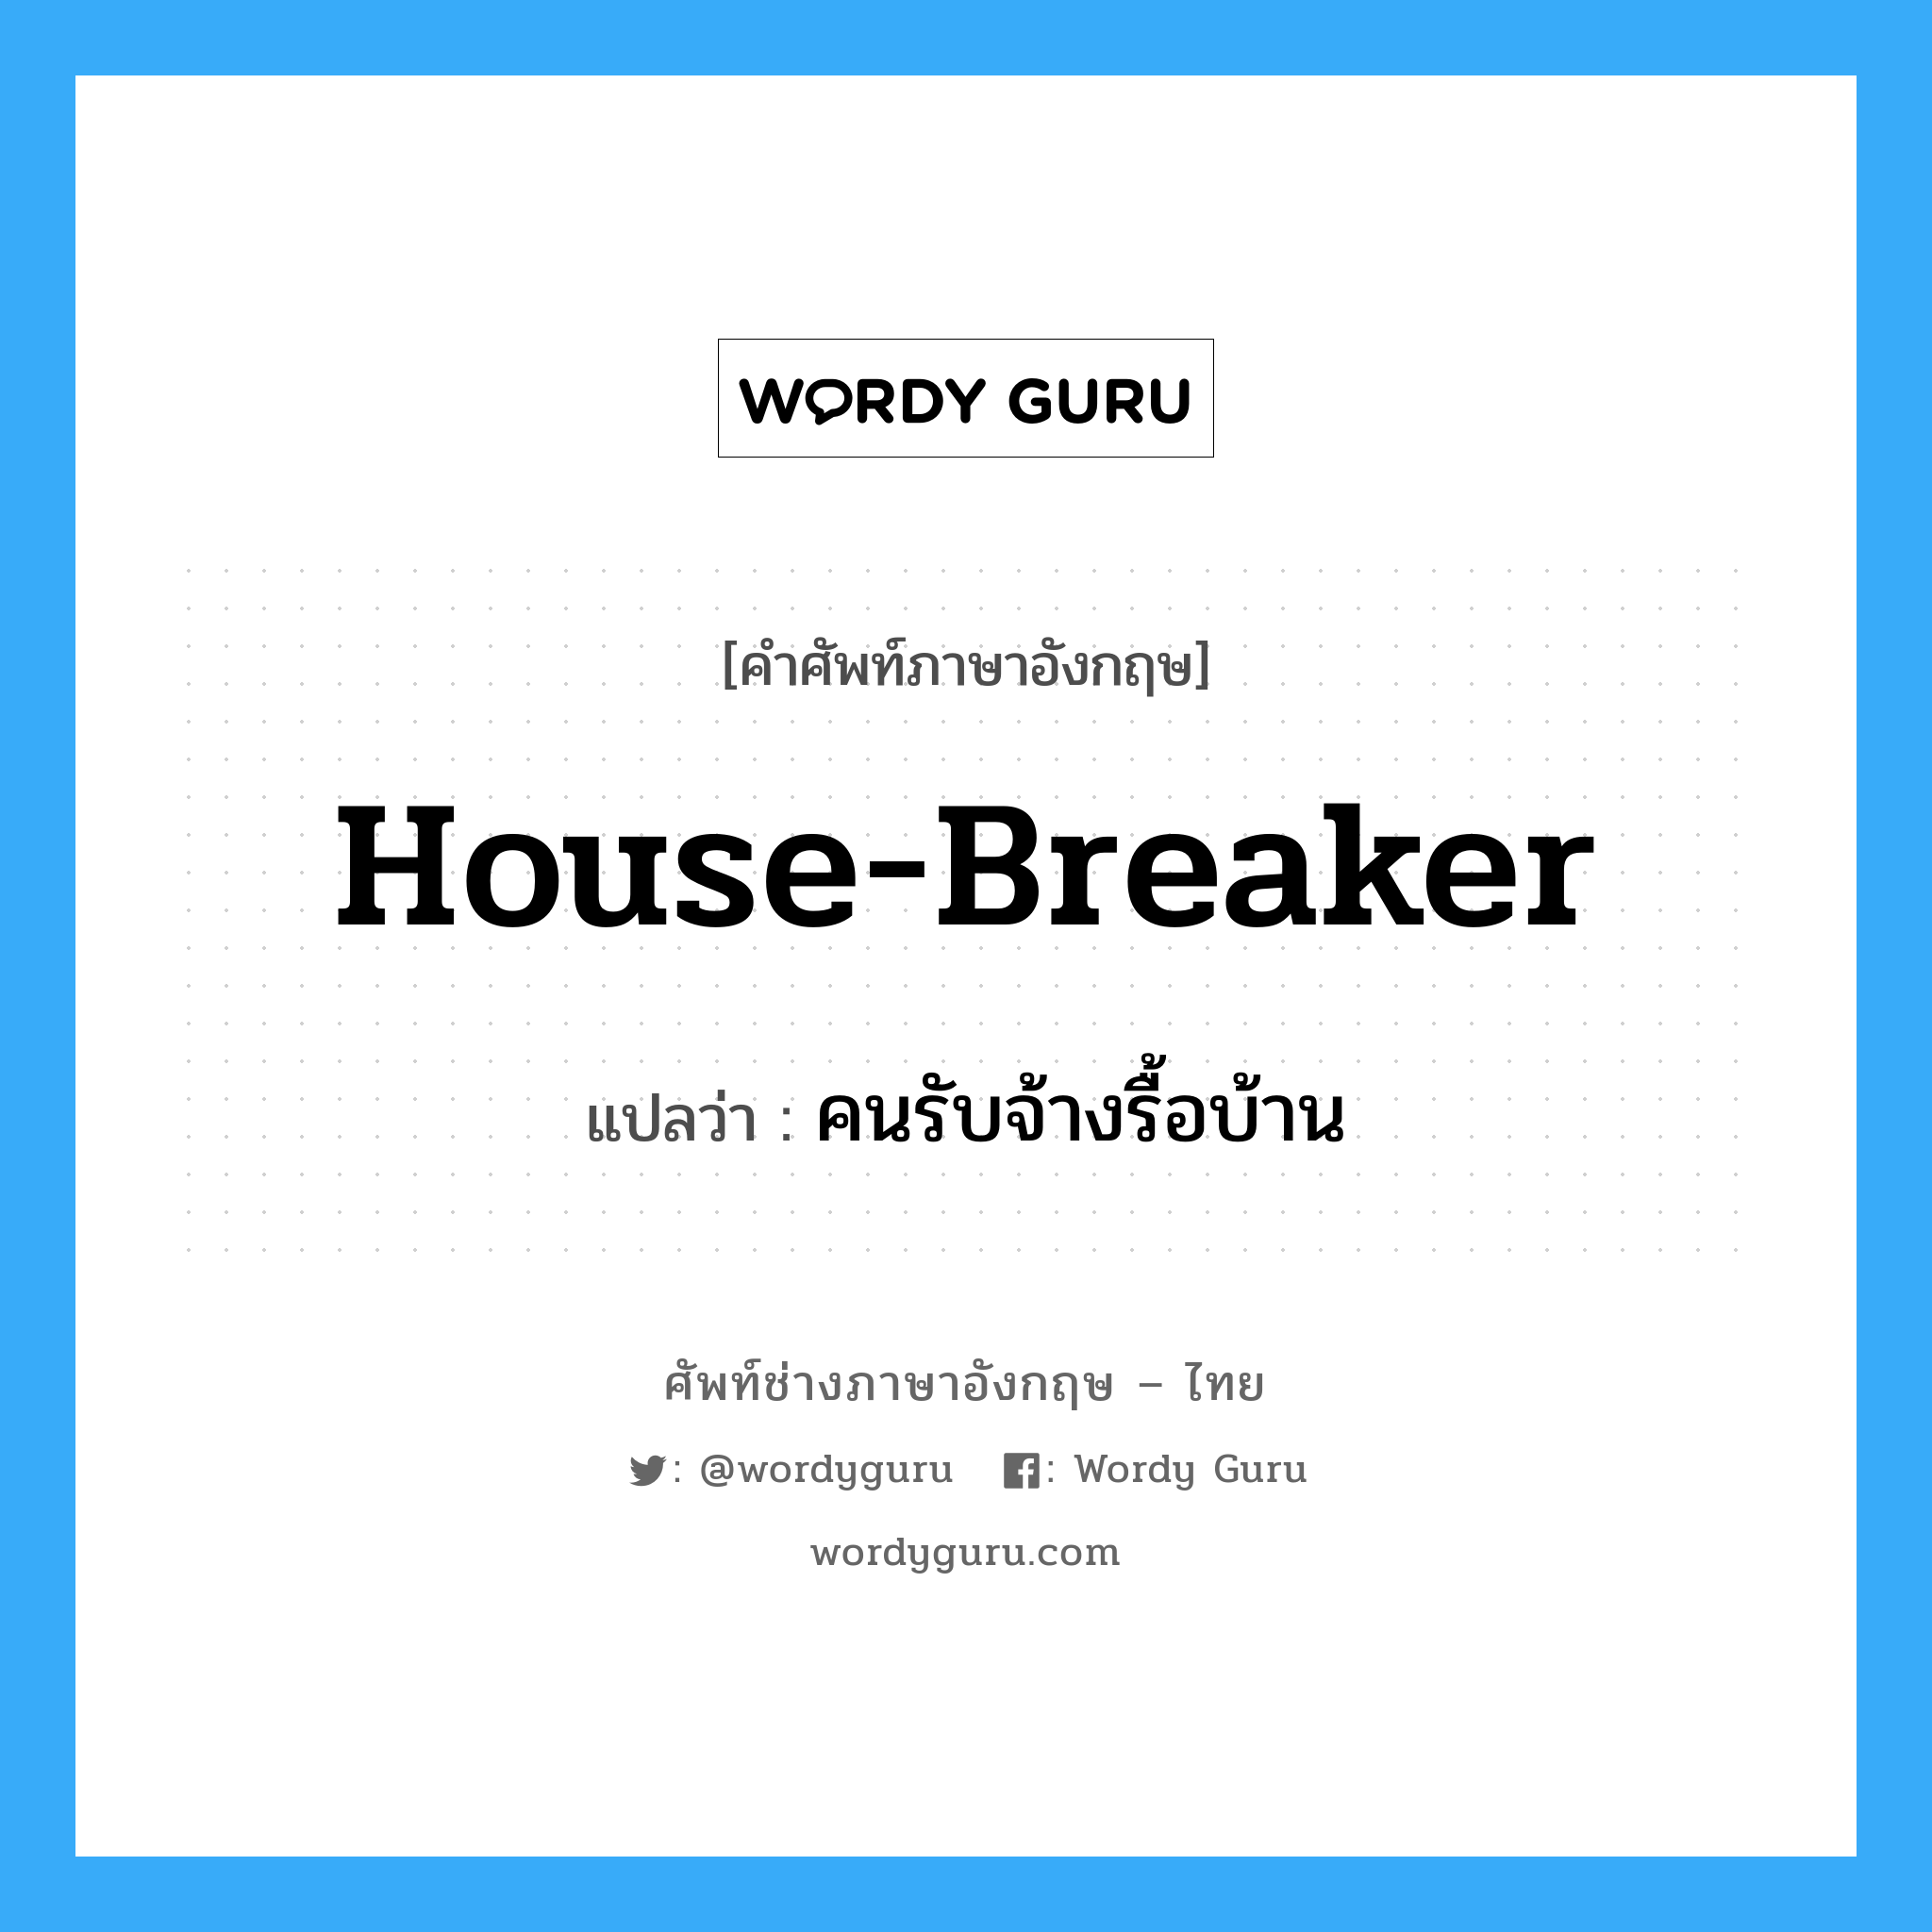 house-breaker แปลว่า?, คำศัพท์ช่างภาษาอังกฤษ - ไทย house-breaker คำศัพท์ภาษาอังกฤษ house-breaker แปลว่า คนรับจ้างรื้อบ้าน